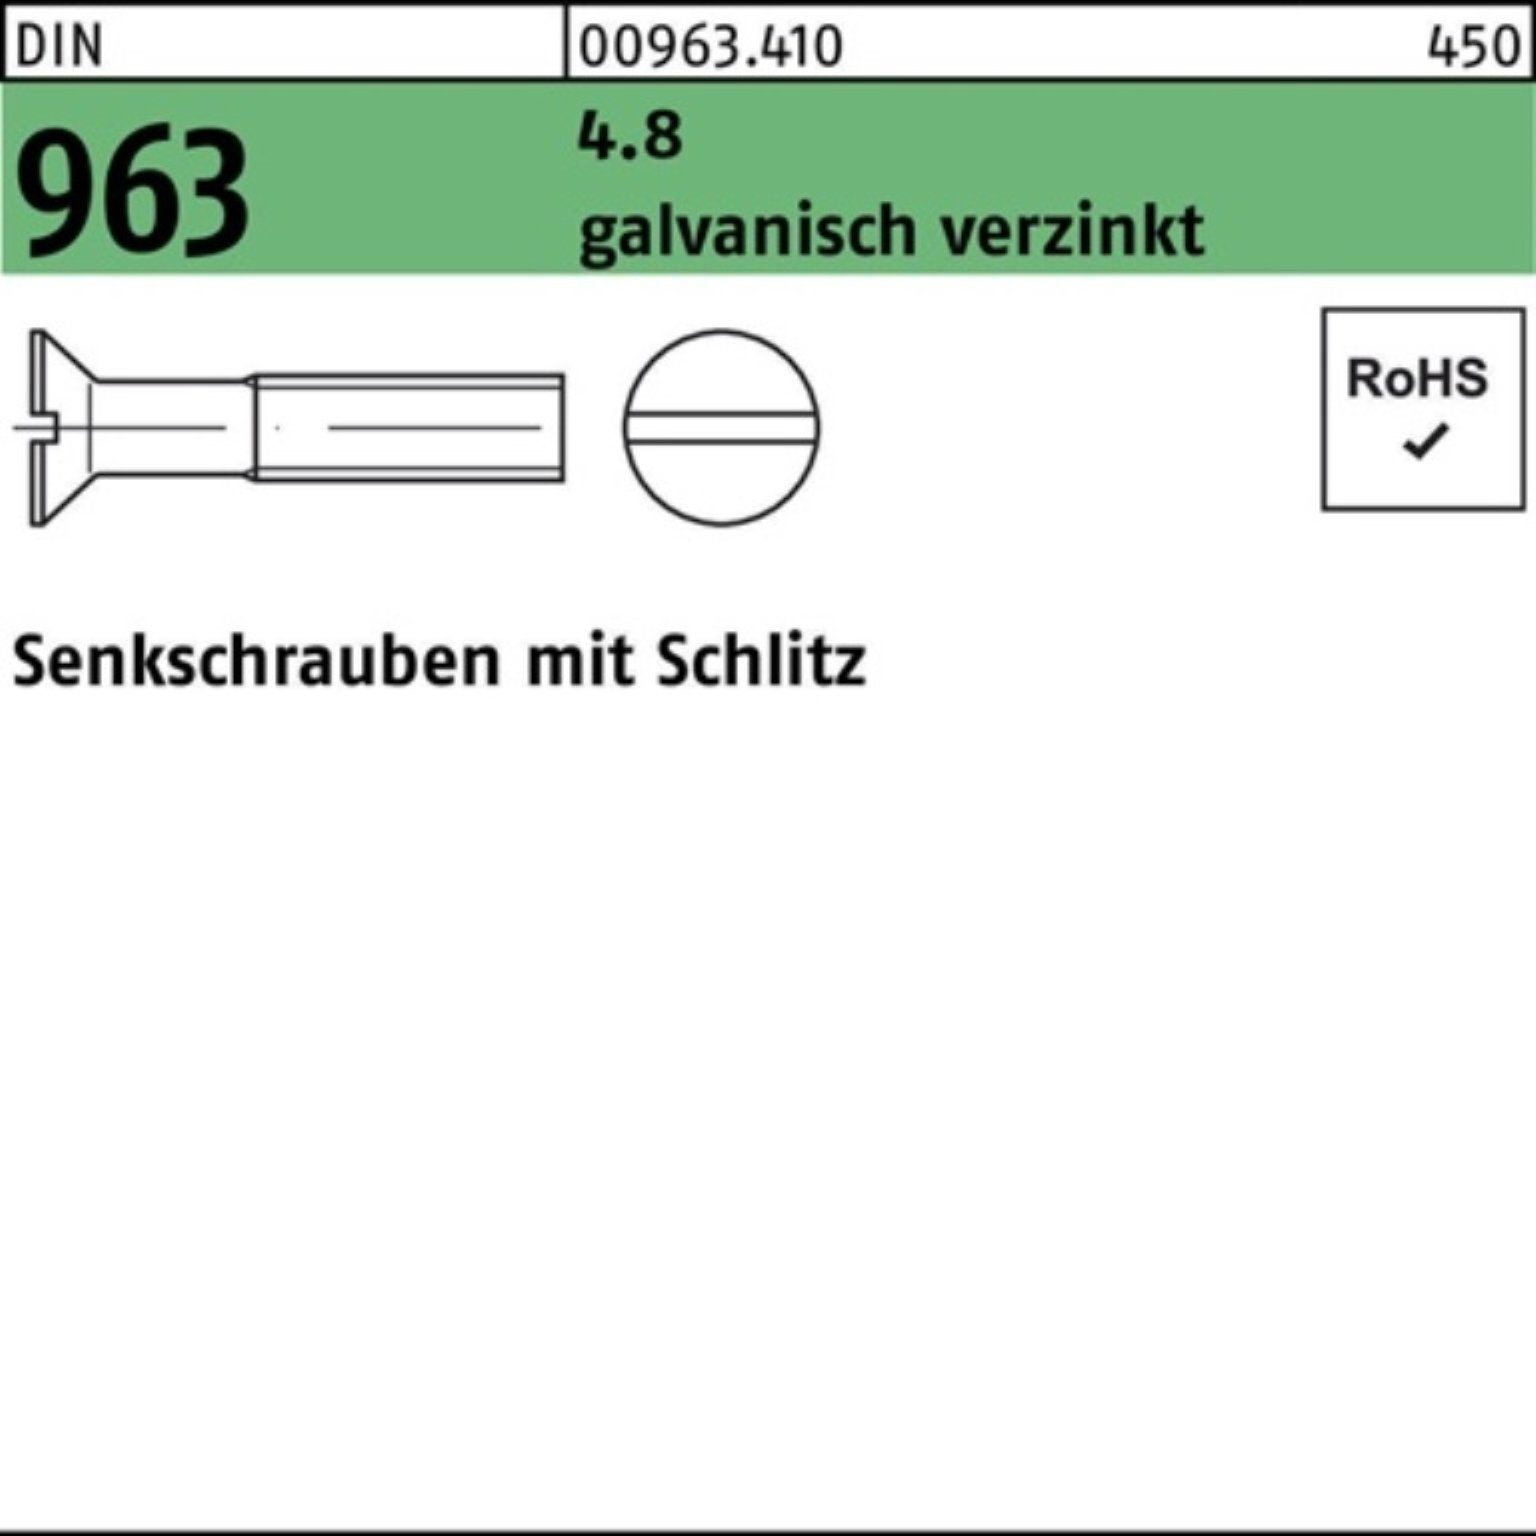 DIN 30 St Senkschraube M3x Senkschraube Reyher Pack 4.8 963 galv.verz. 2000 Schlitz 2000er